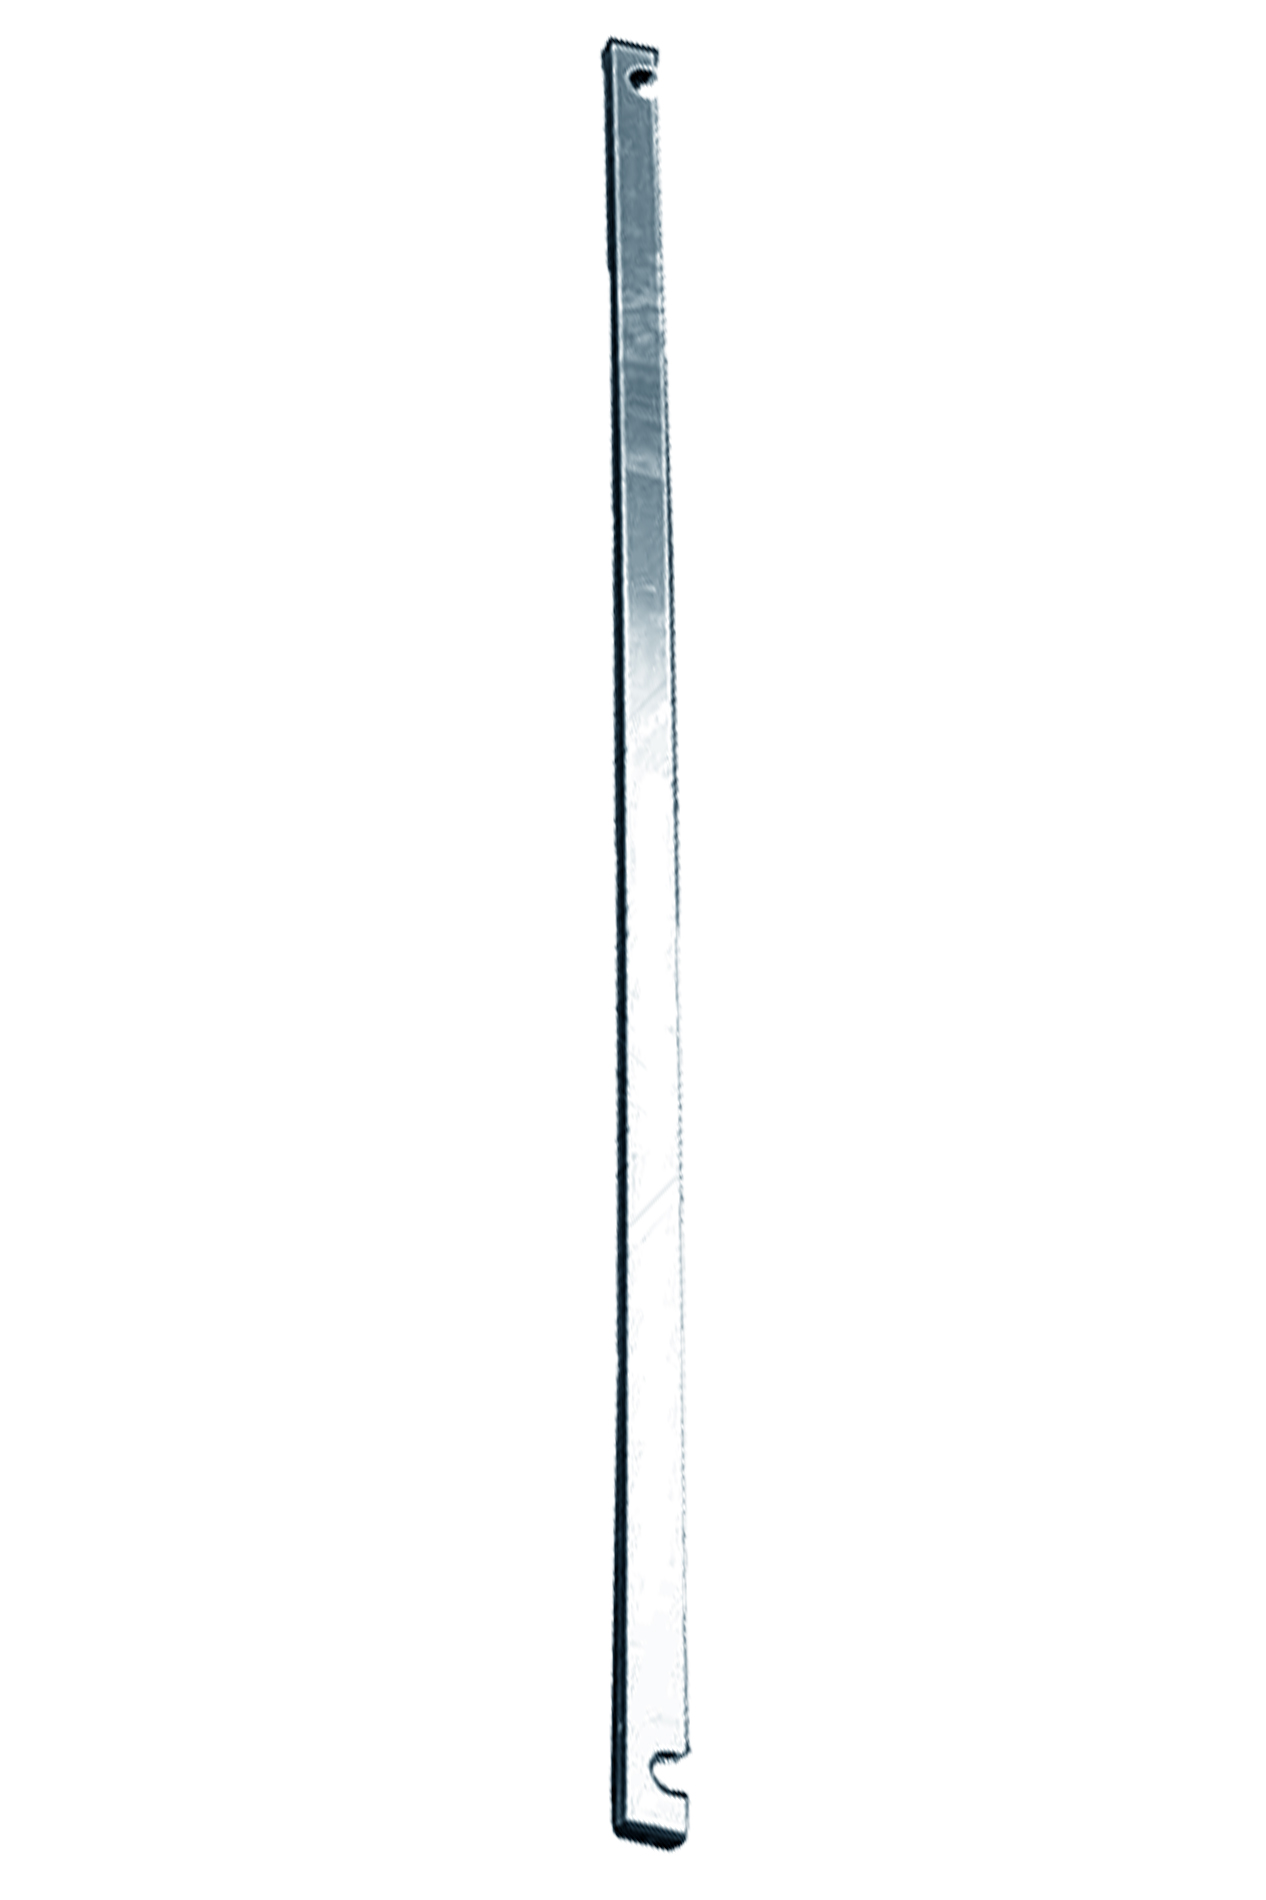 Дополнительное изображение STABILO 100-3 Передвижные подмости, рабочая высота 7,3 м, размер площадки (3.0x0.75 м)